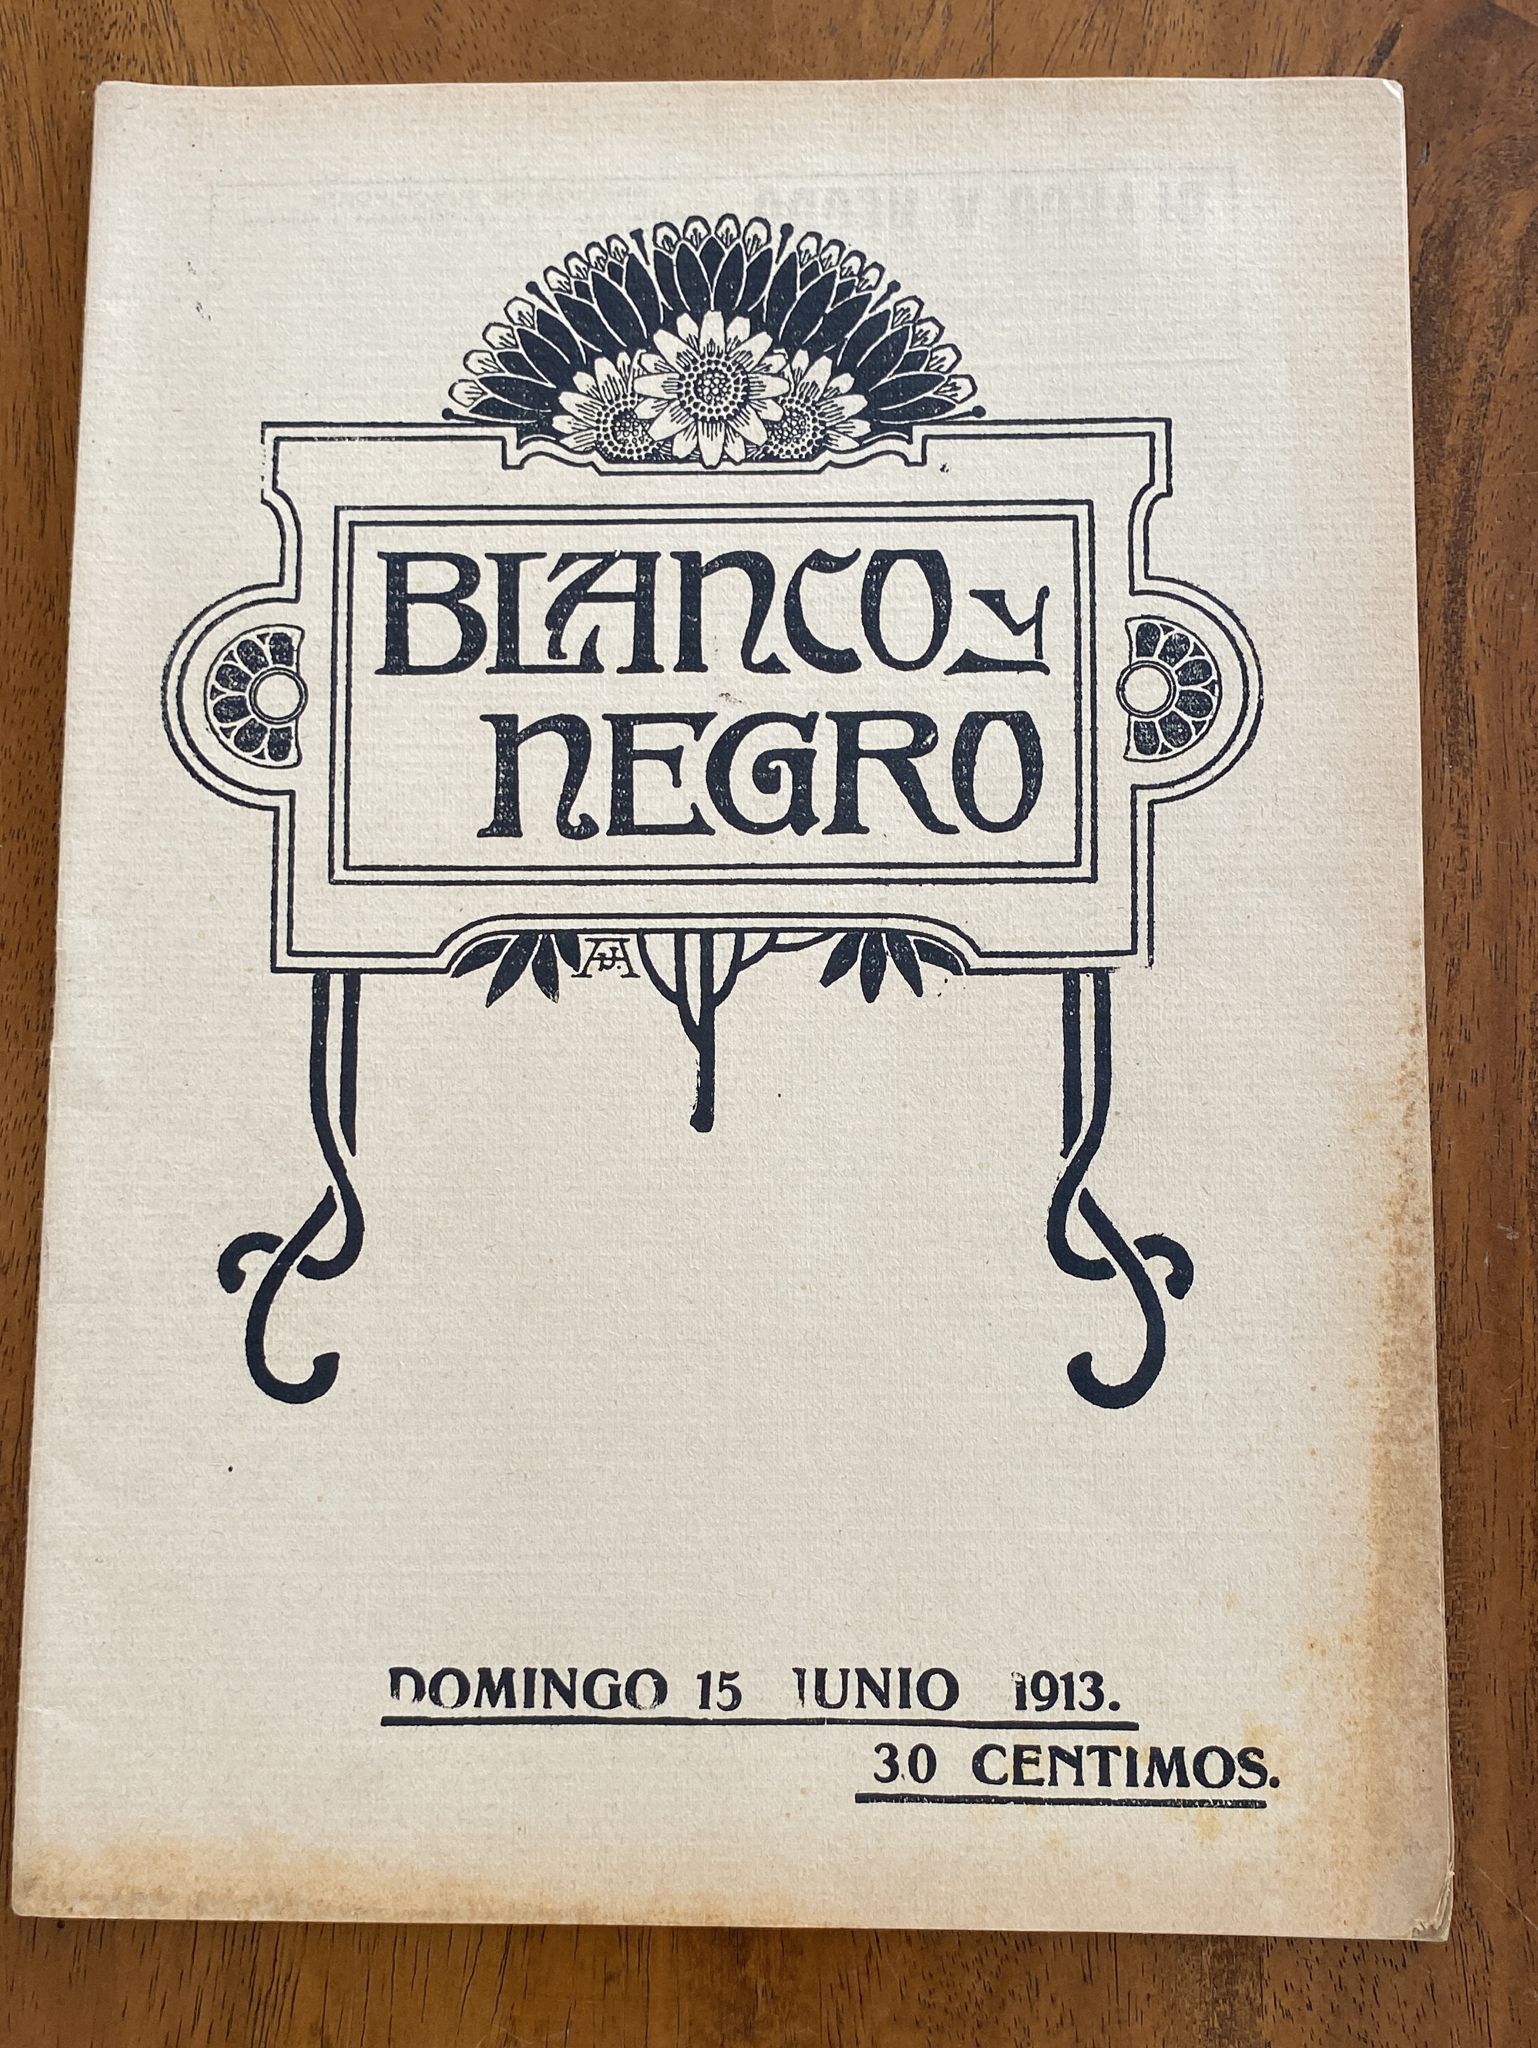 Blanco y Negro nº 1152. Madrid 13 de Junio de 1913. Ataque al Cañonero General Concha en Alhucemas